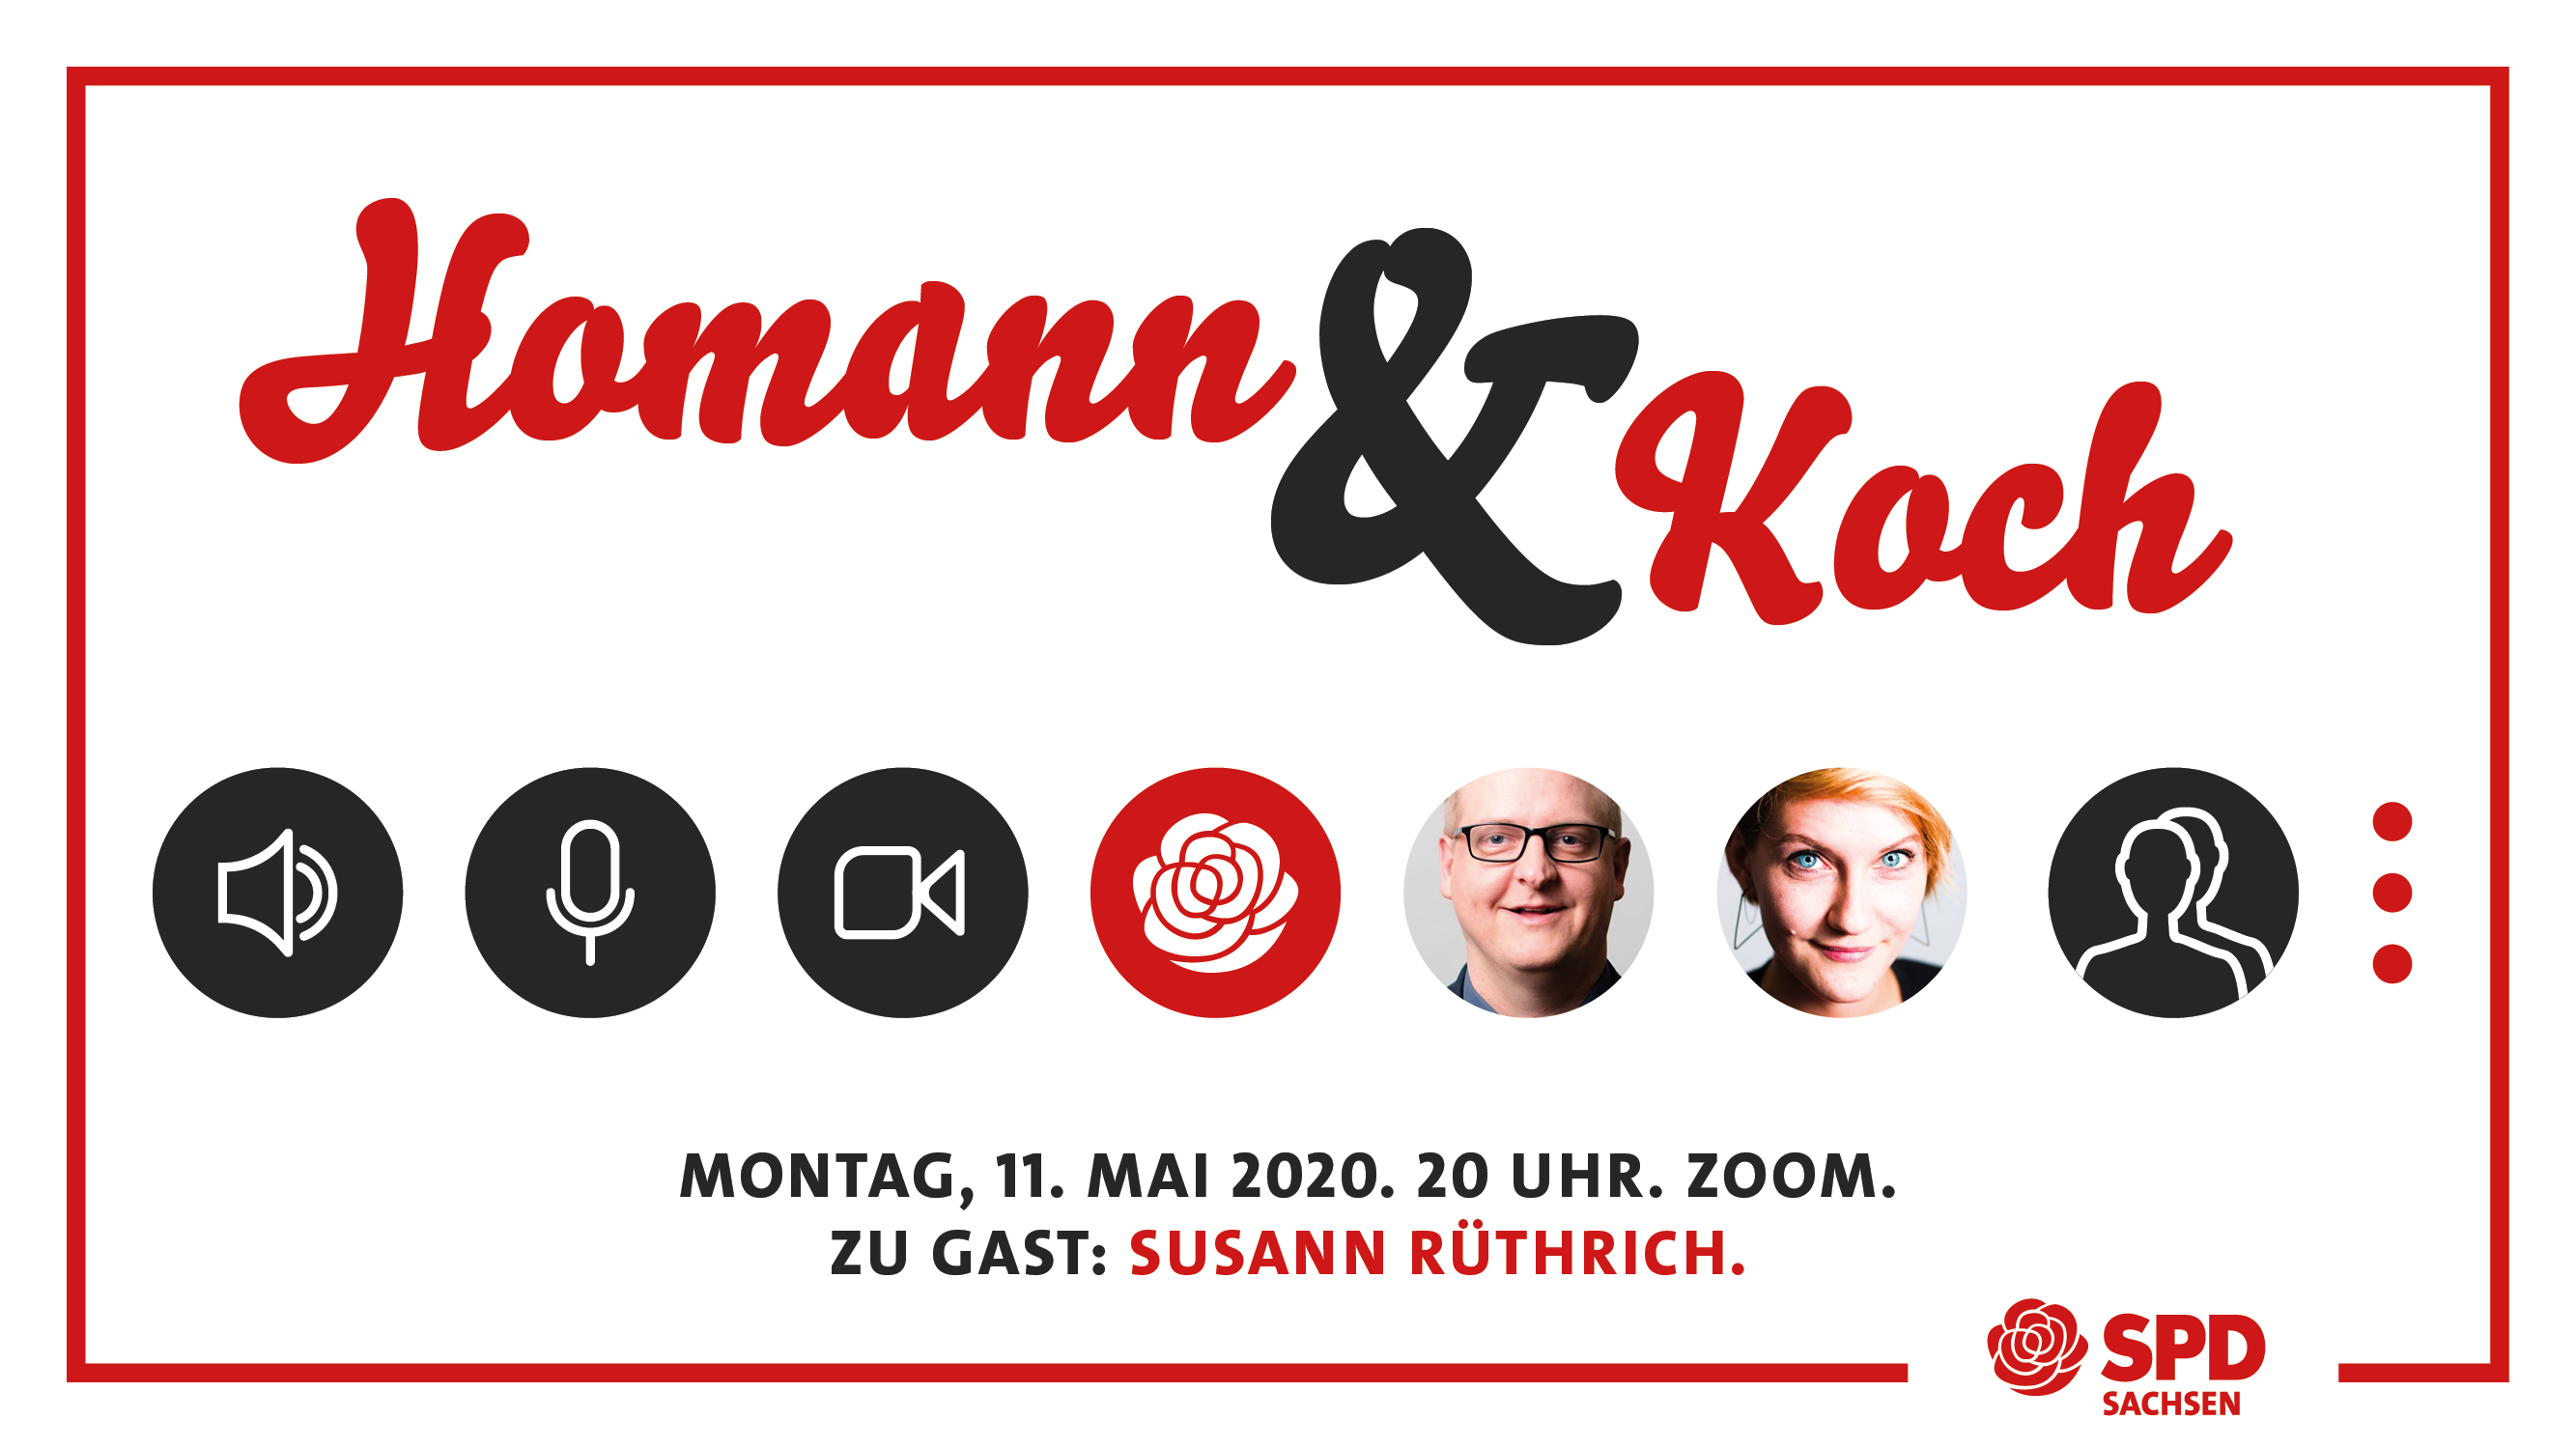 Homann & Koch. Im Gespräch mit euch.